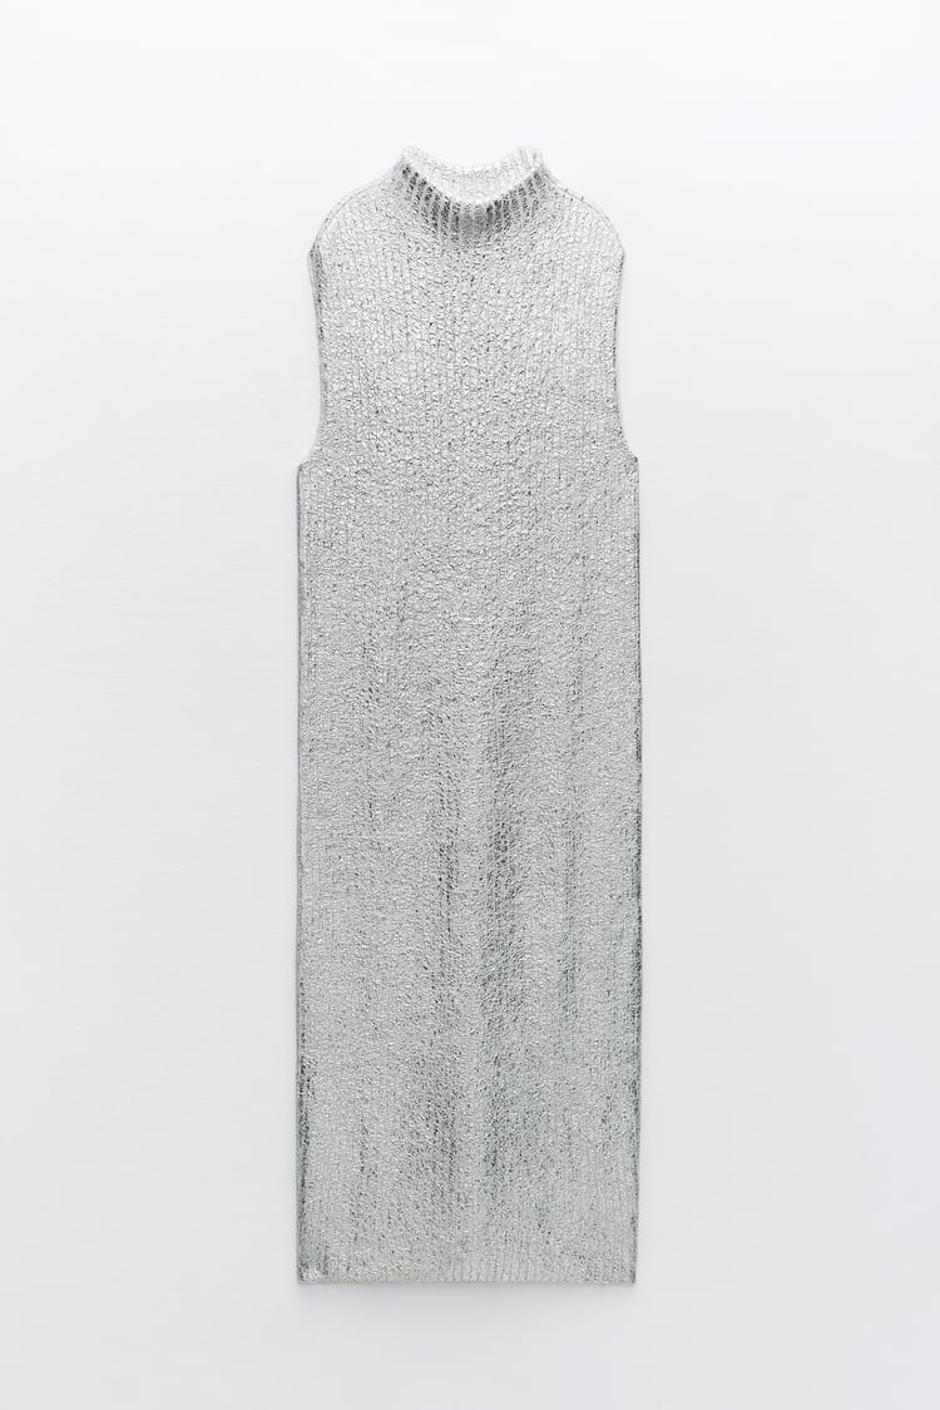 Zara metalizirana haljina | Autor: Zara